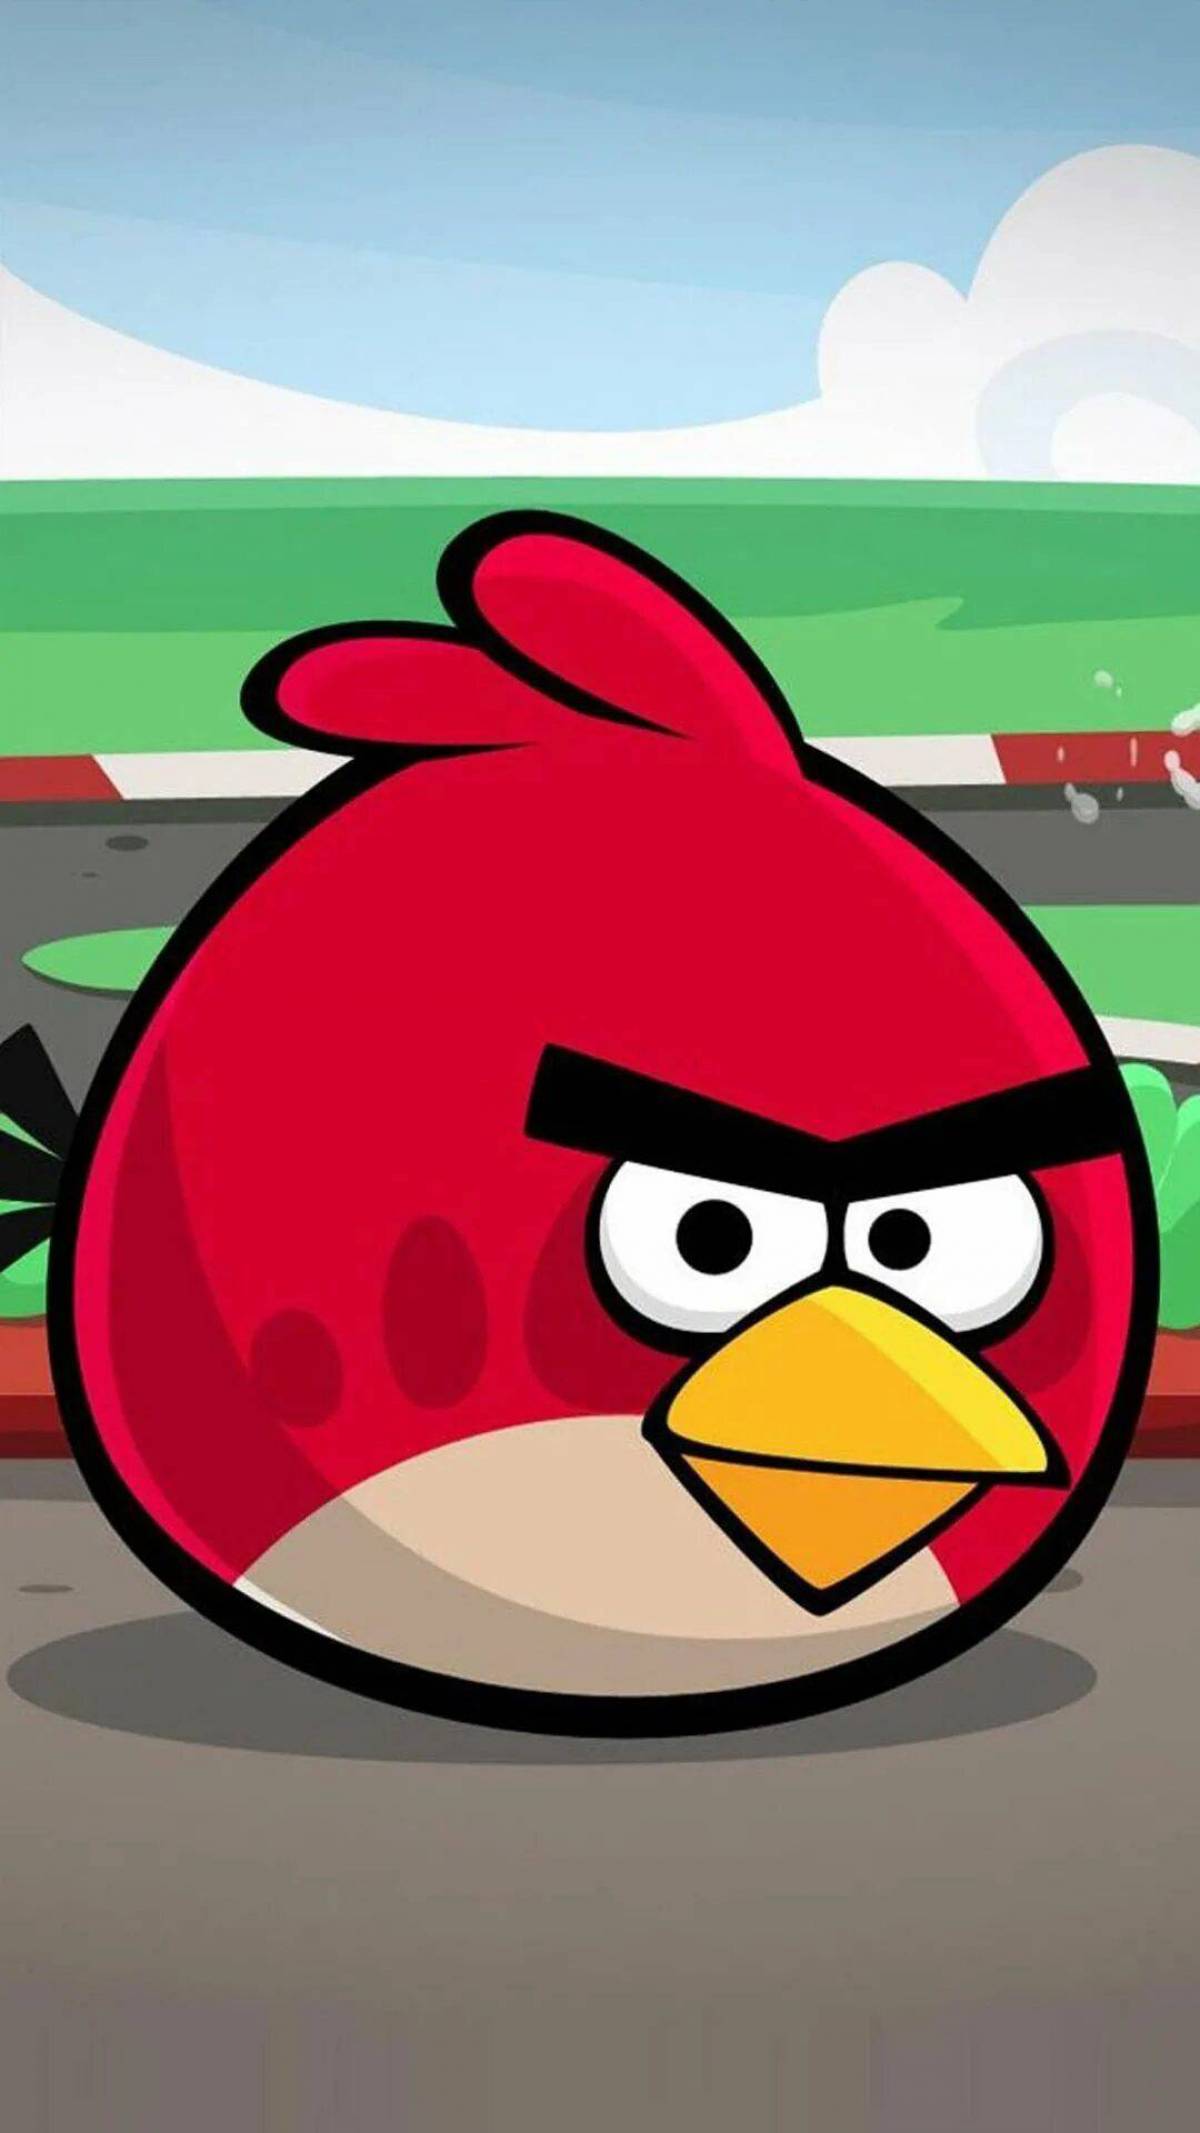 Ангри берс старый. Энгри бердз злые птички. Игра Angry Birds Red. Энгри берс злая птичка. Ред из Энгри бердз из игры.